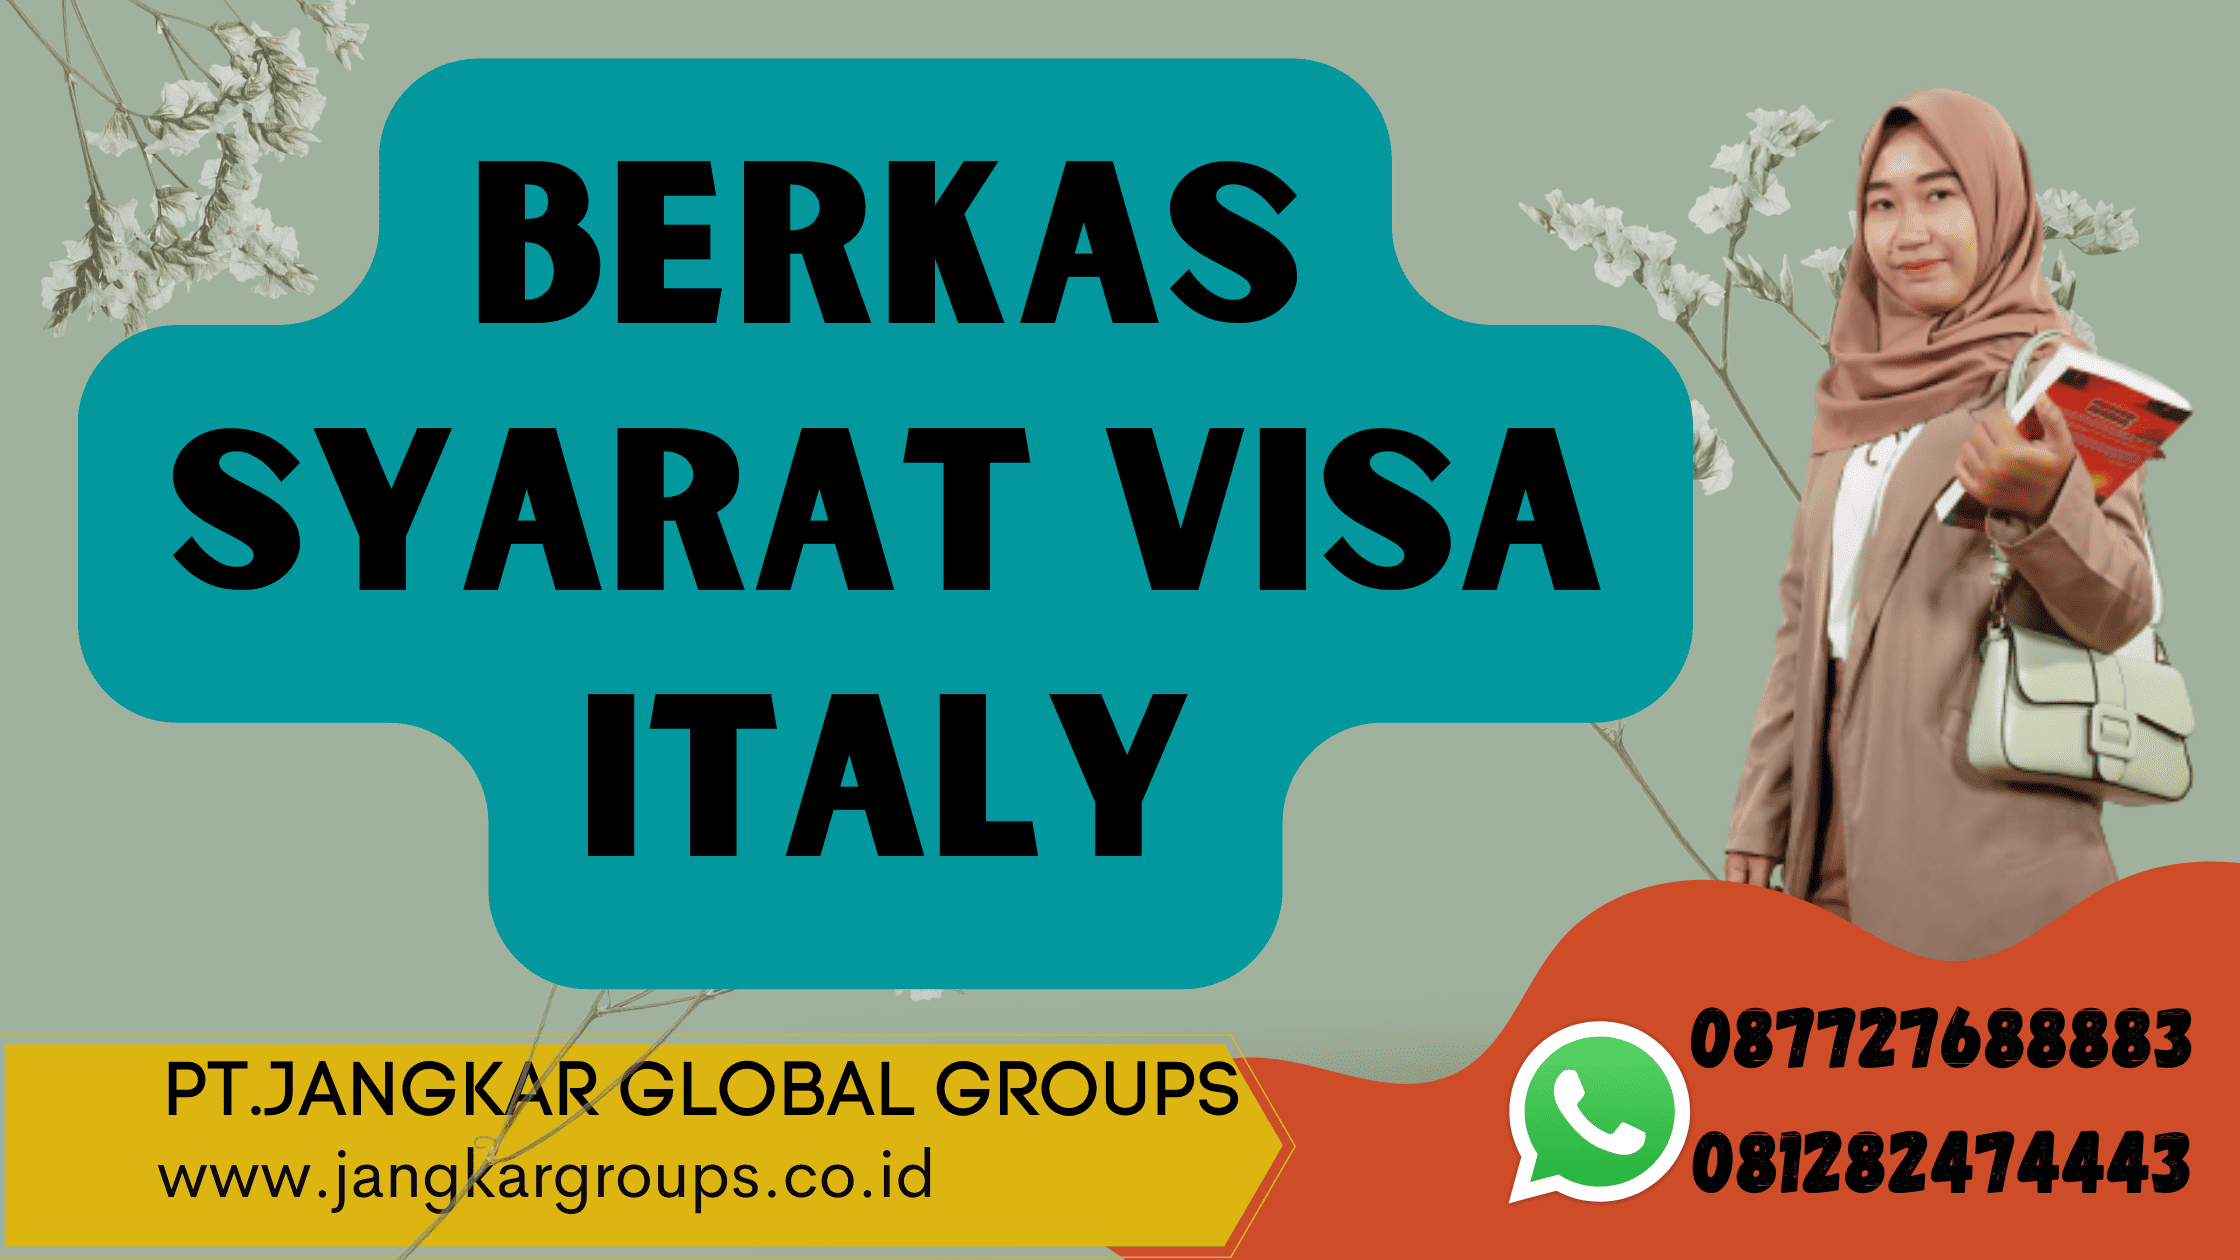 Berkas Syarat Visa Italy